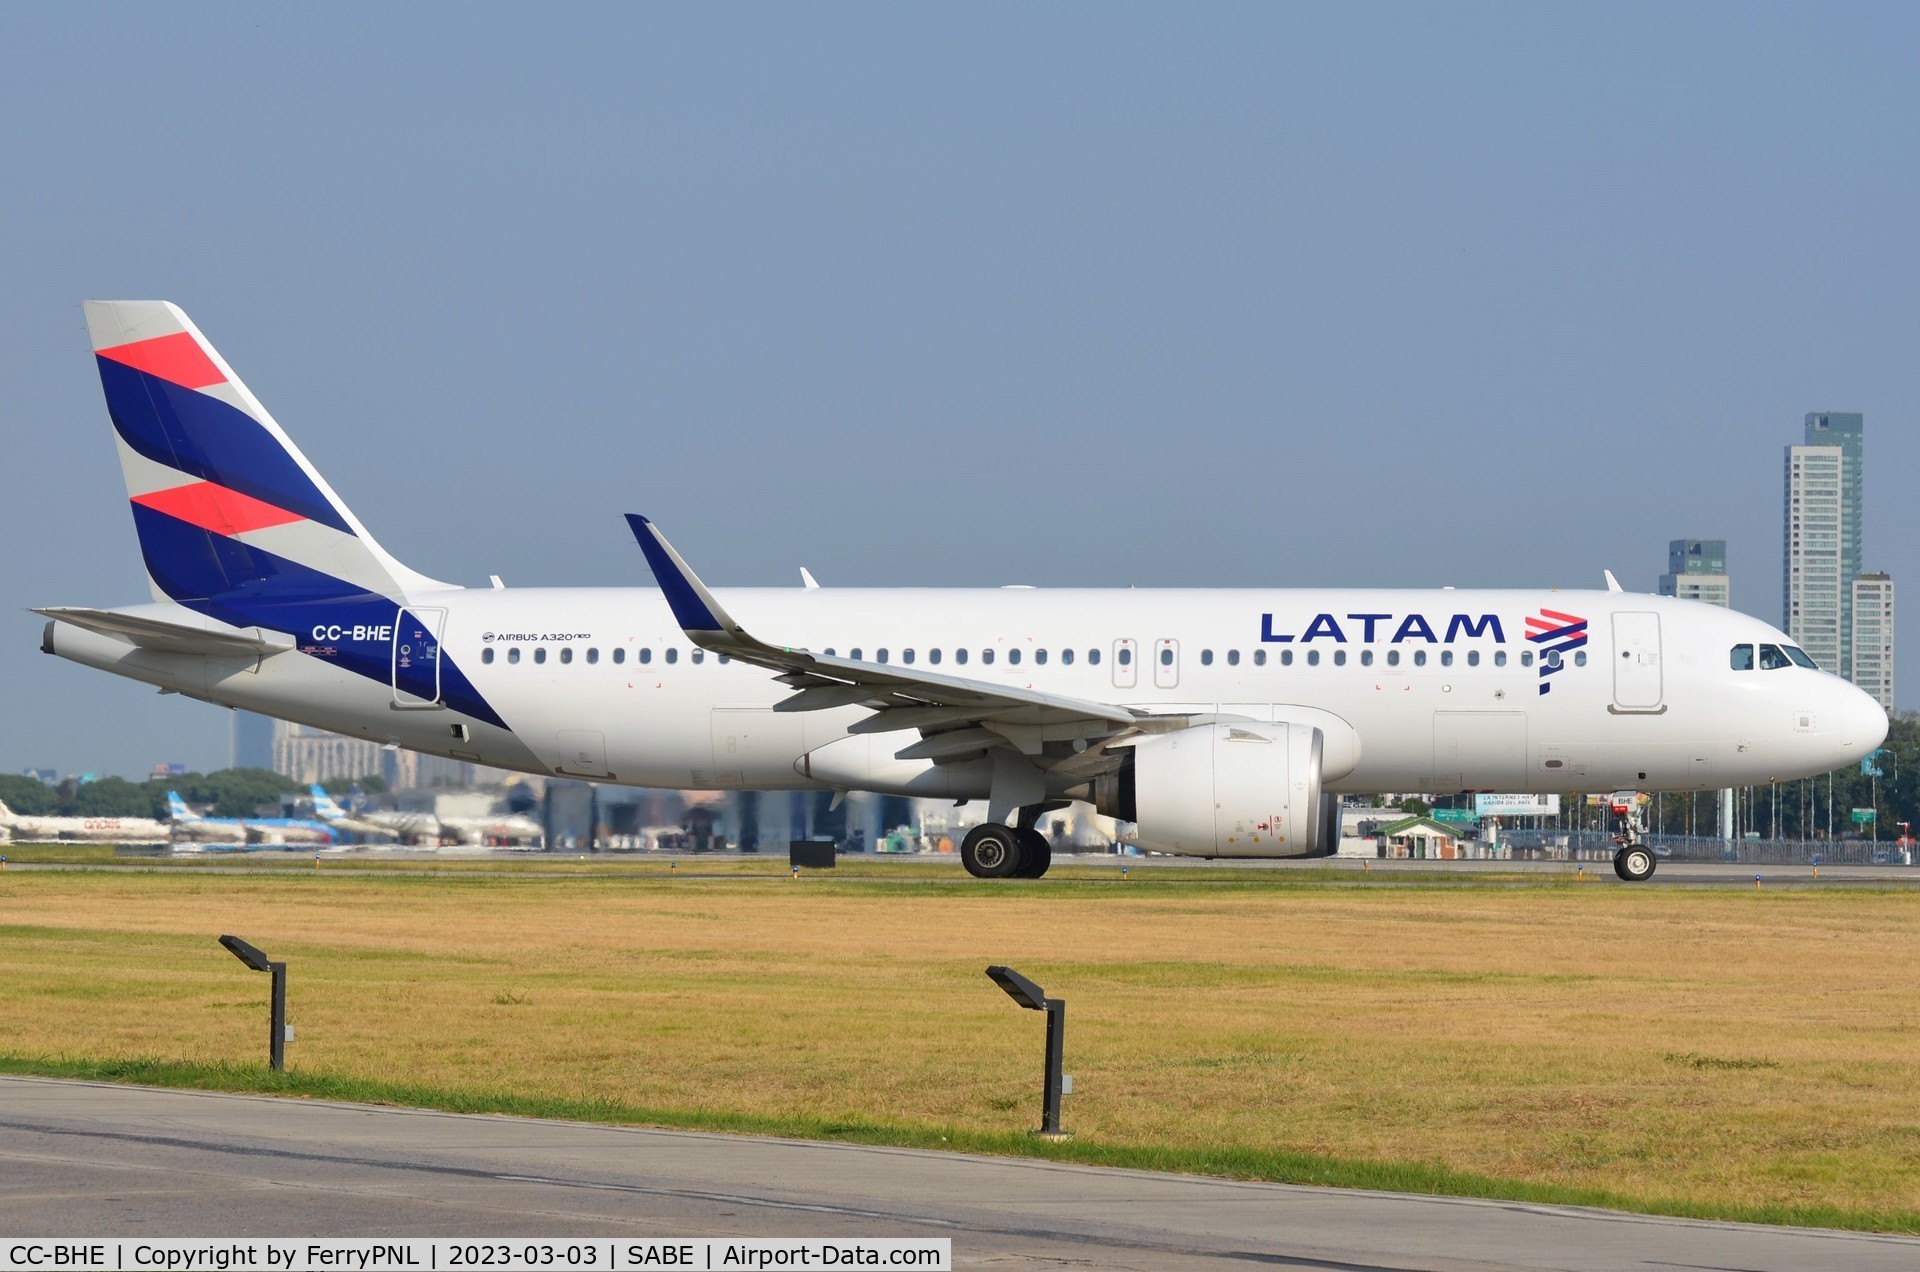 CC-BHE, 2019 Airbus A320-271N C/N 8172, Latam A320N lining up in AEP